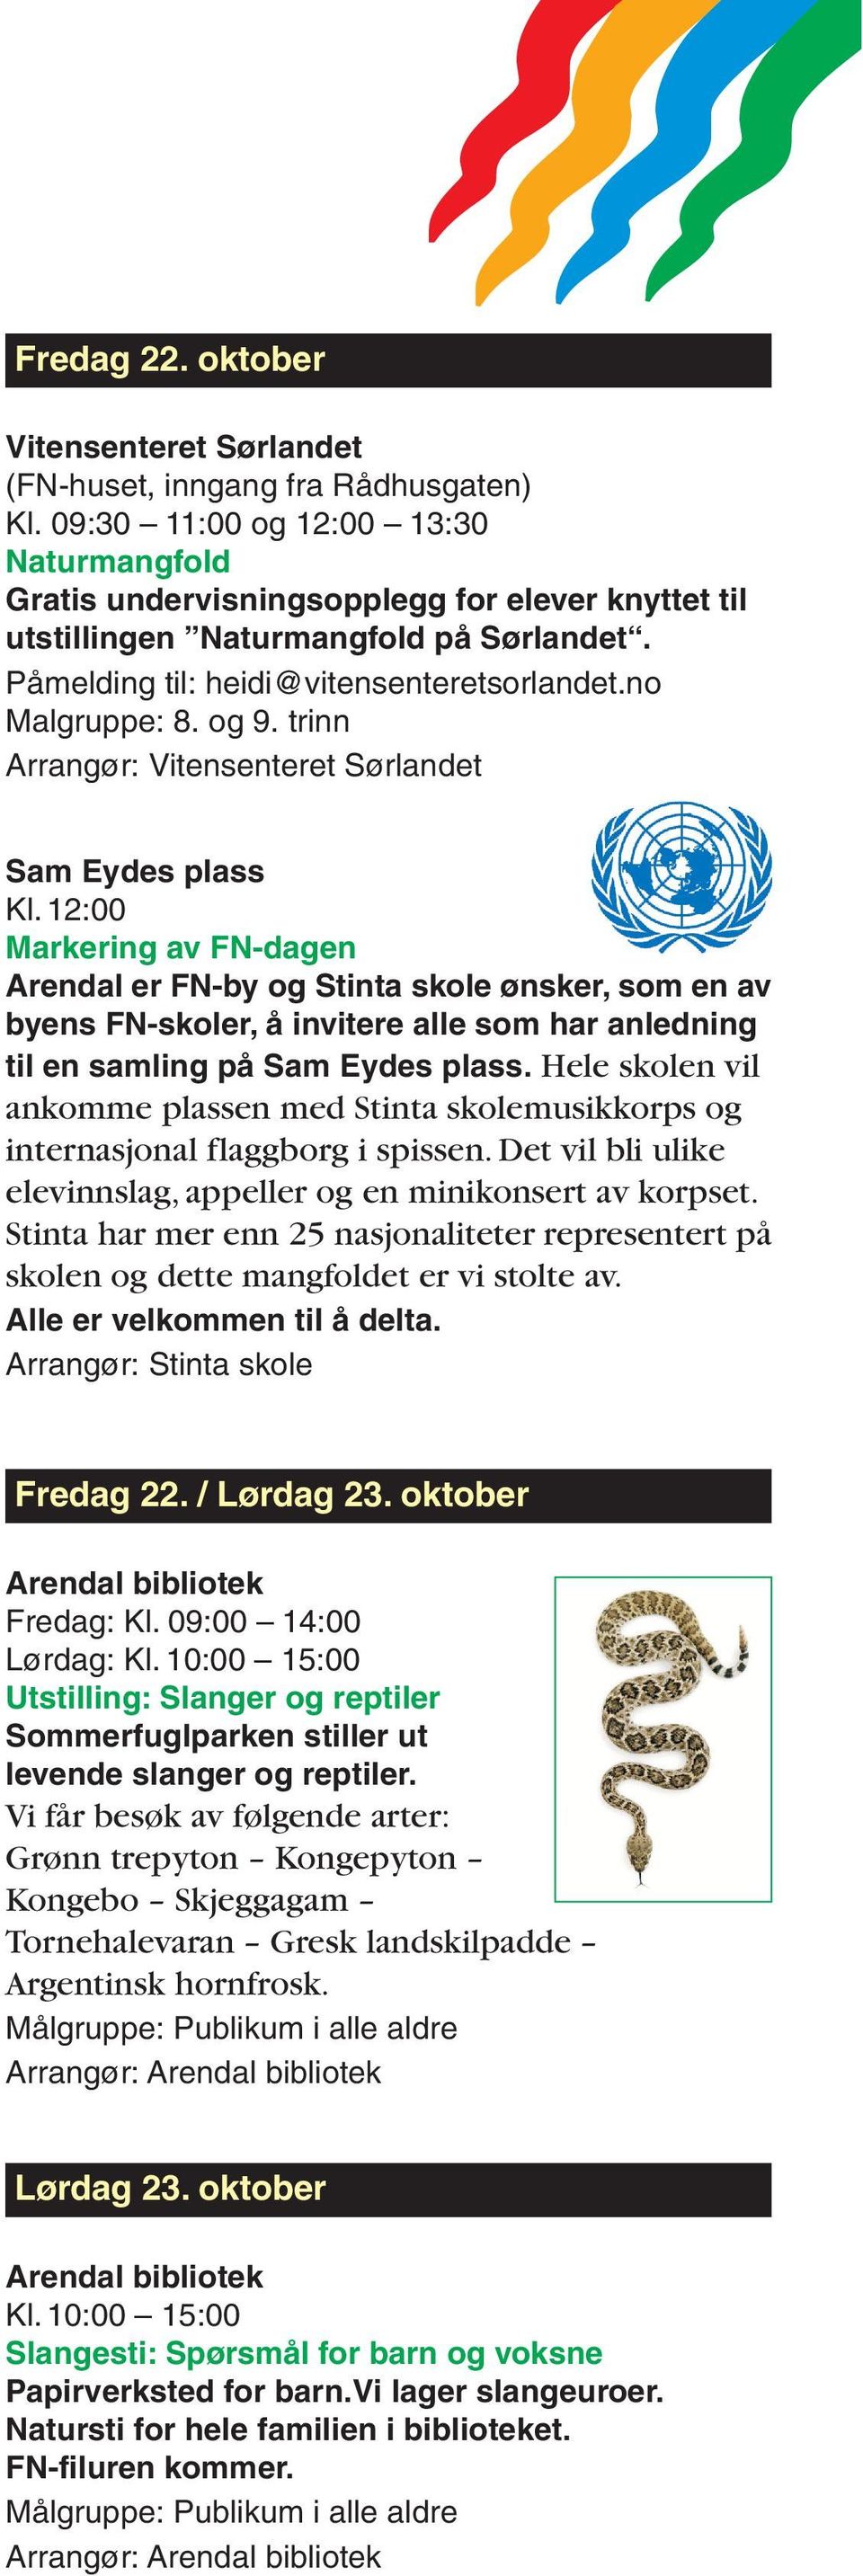 12:00 Markering av FN-dagen Arendal er FN-by og Stinta skole ønsker, som en av byens FN-skoler, å invitere alle som har anledning til en samling på Sam Eydes plass.